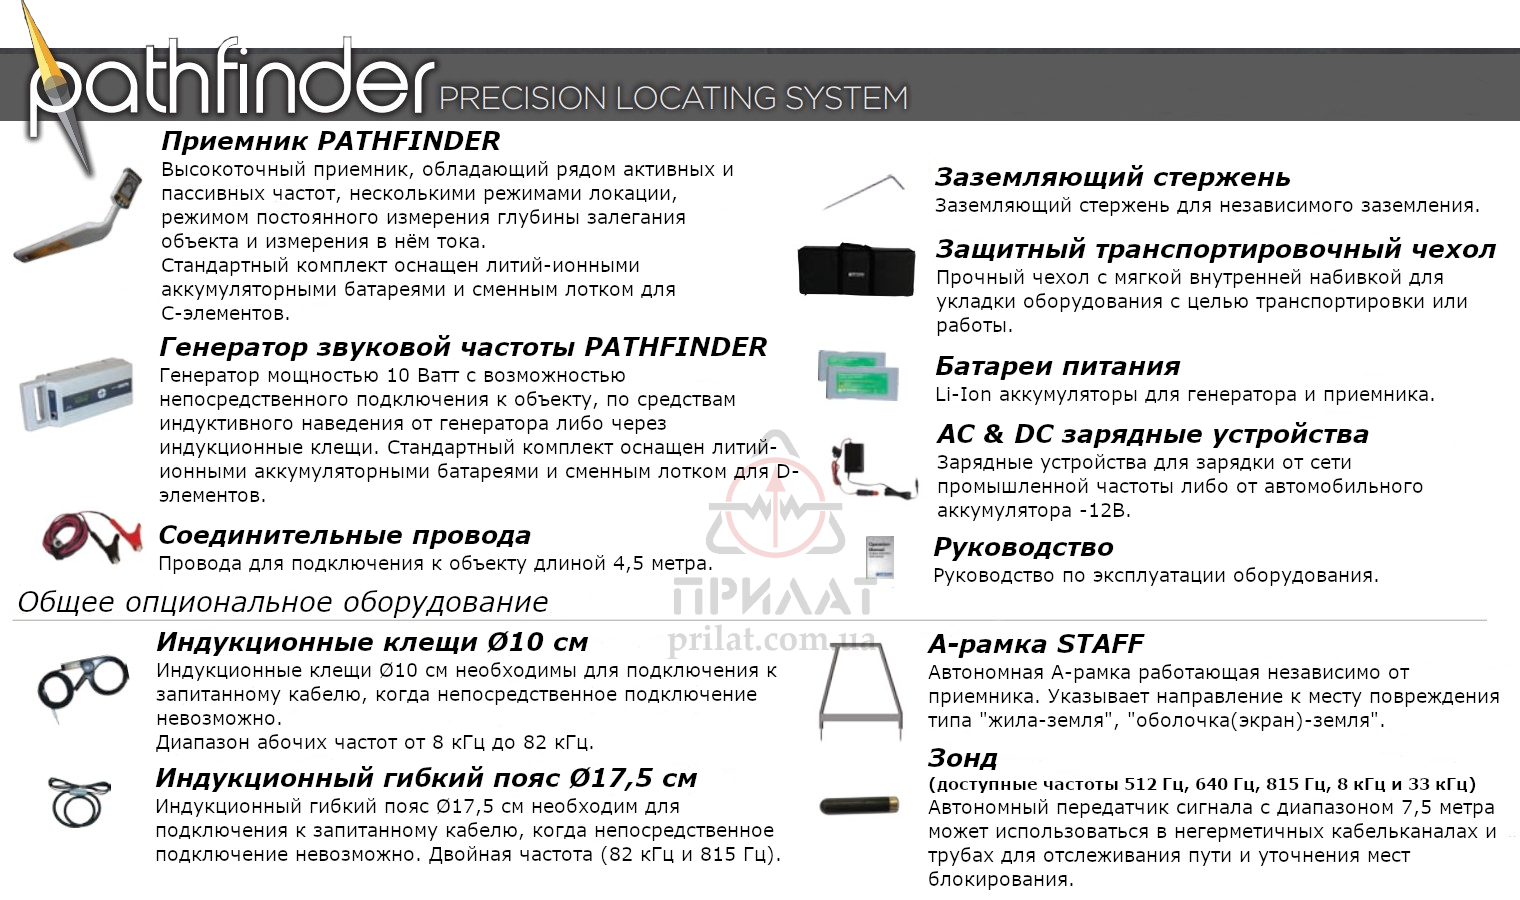 Система поиска подземных коммуникаций PATHFINDER Precision Locating System. Состав